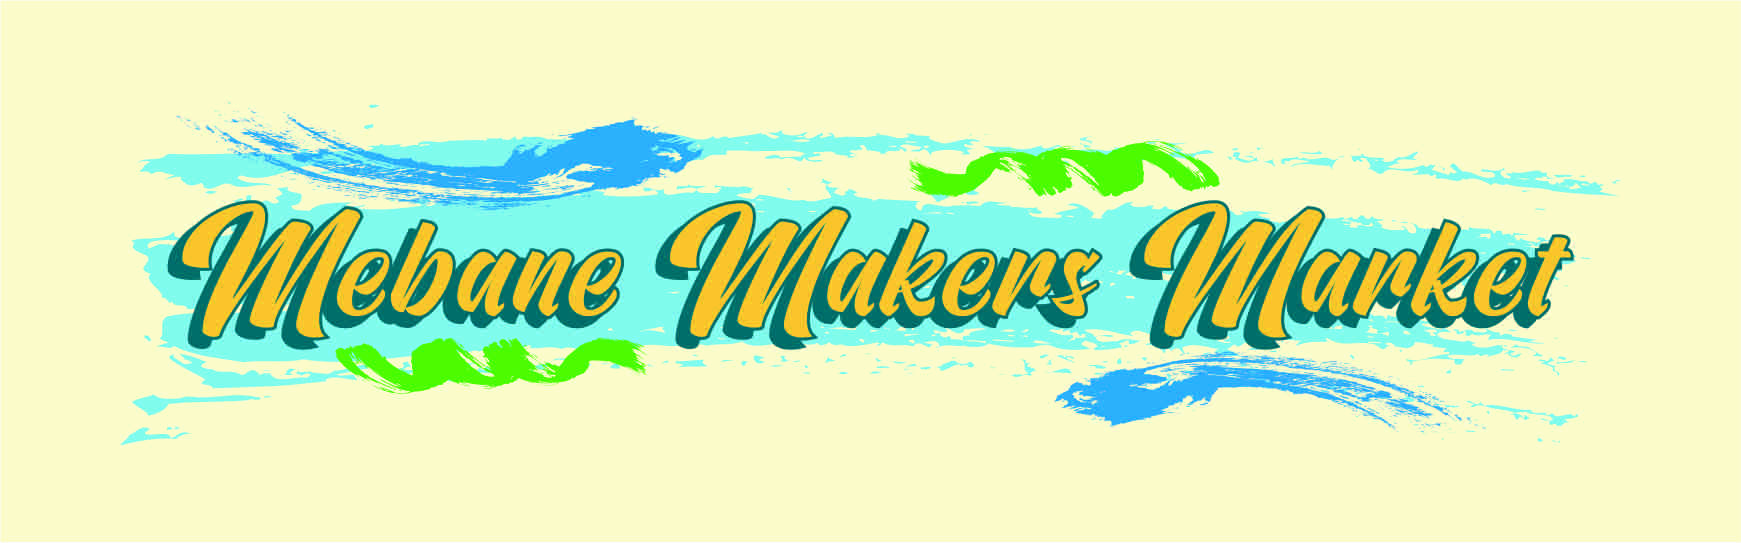 Mebane Maker's Market - September cover image